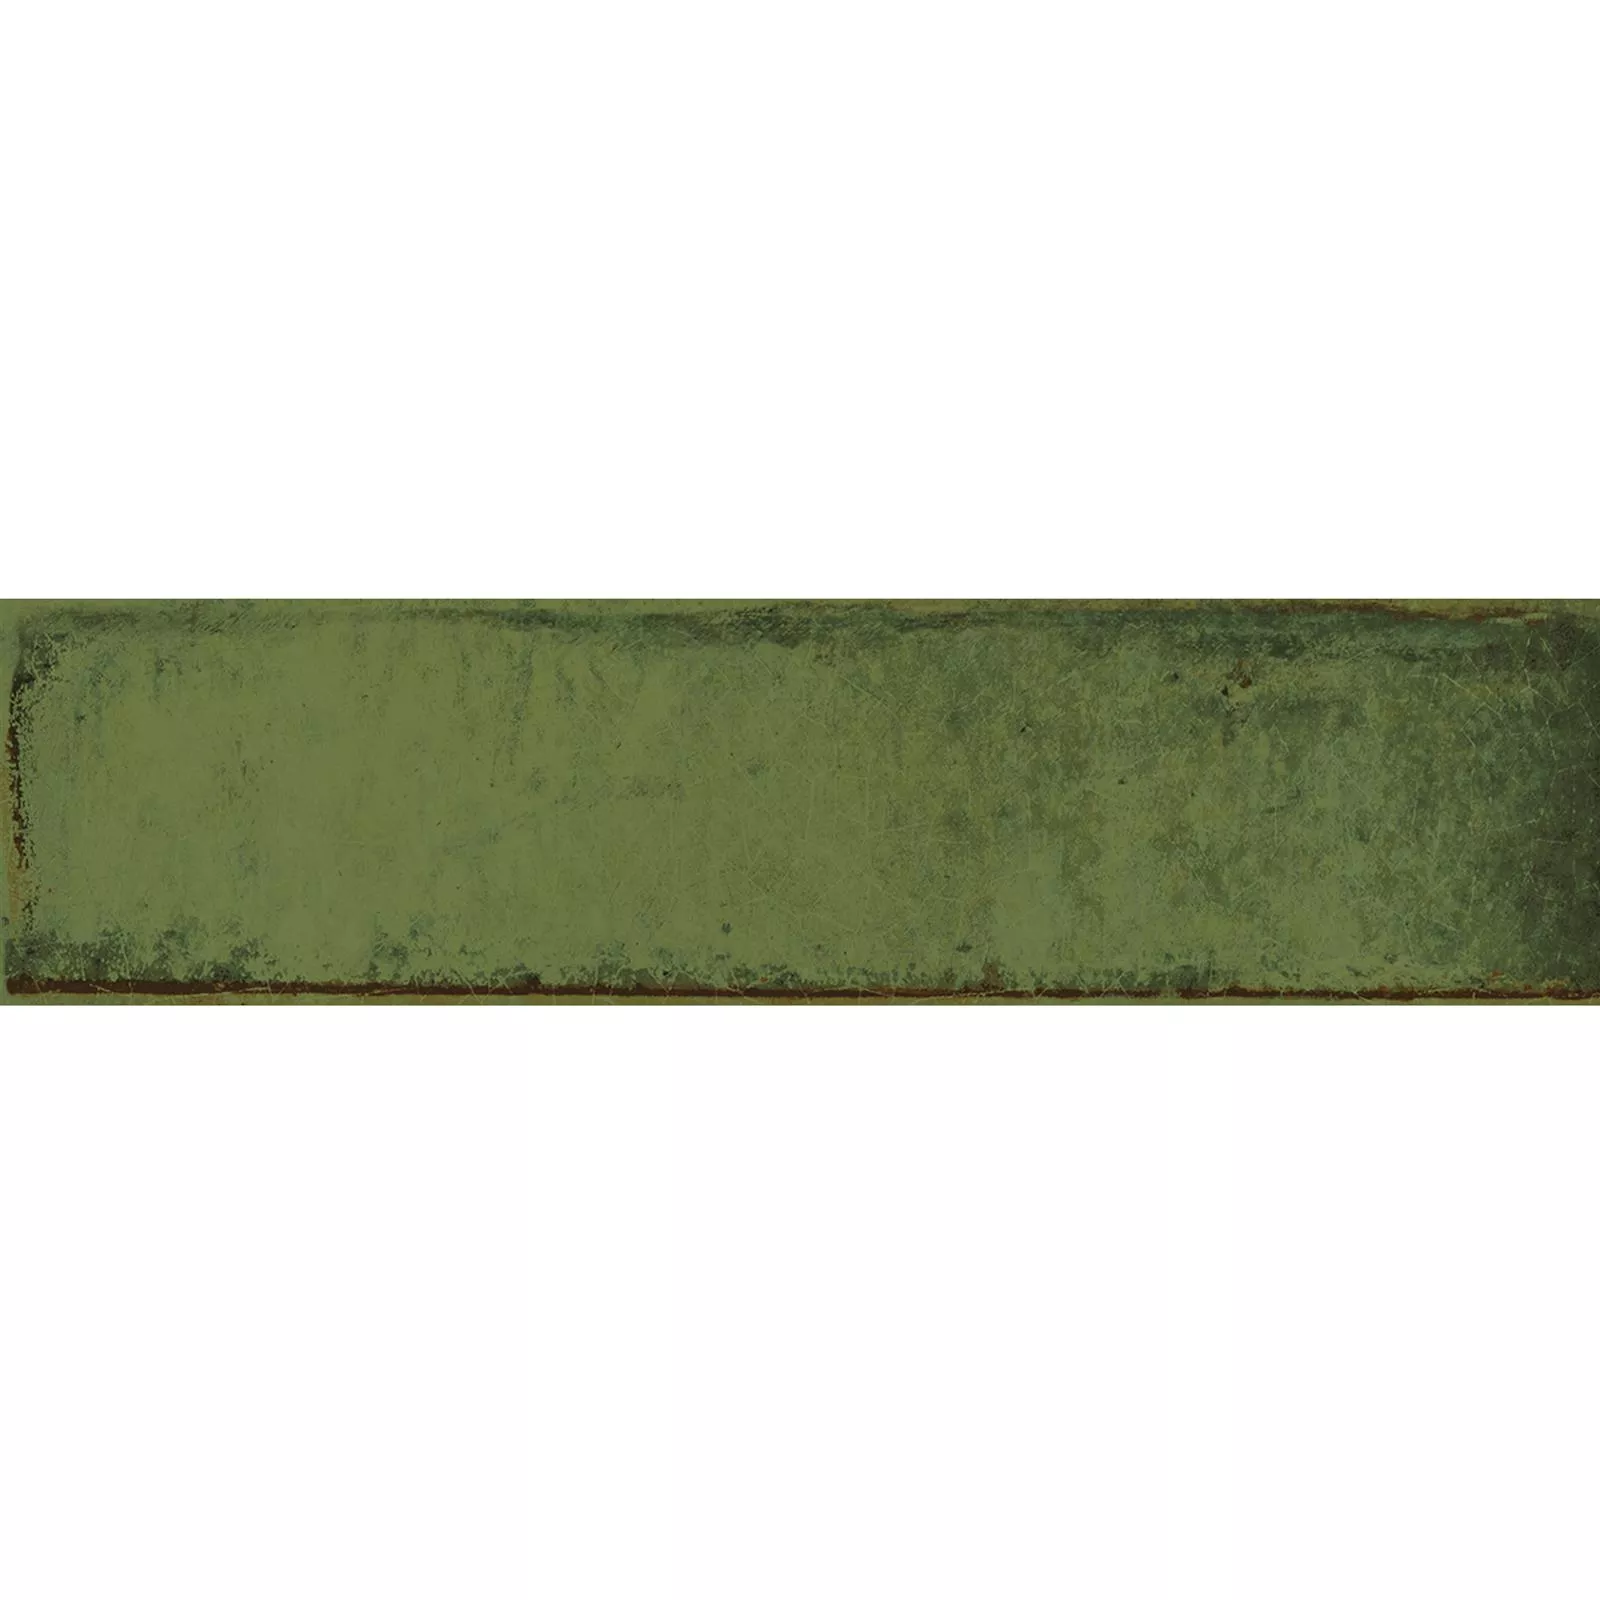 Próbka Płytki Ścienne Maestro Karbowany Błyszczący Zielona Oliwka 7,5x30cm